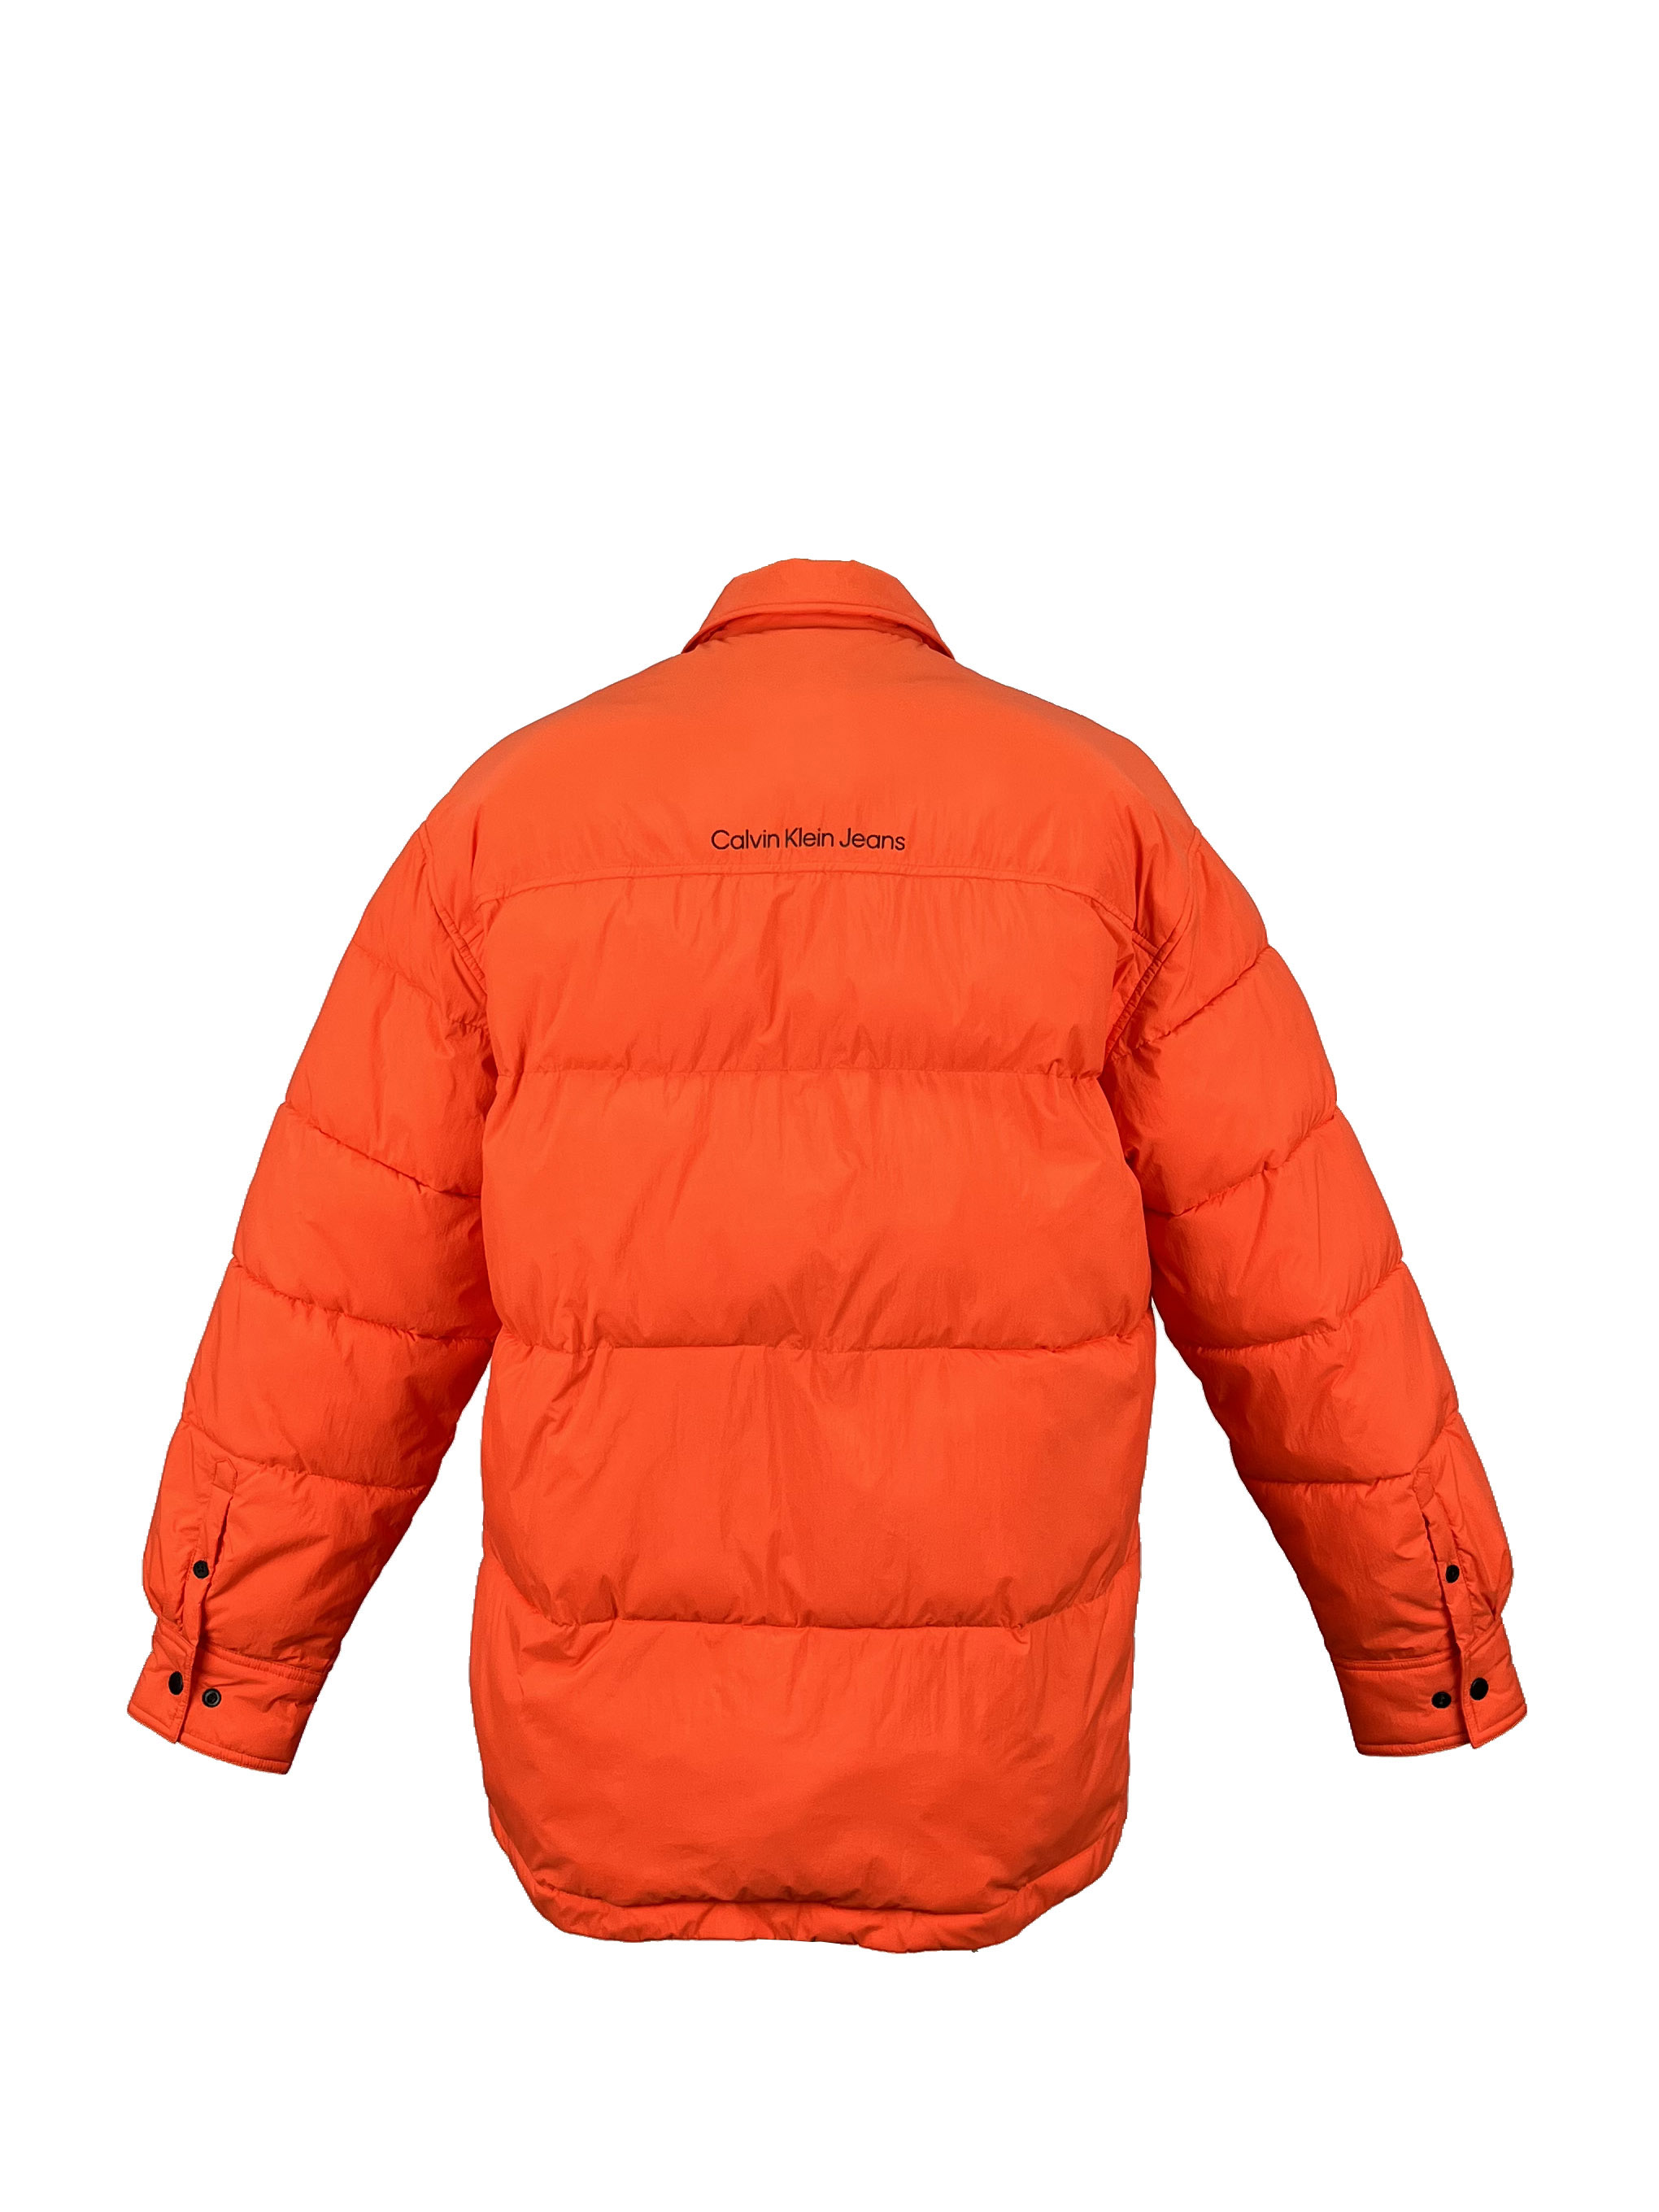 15.padded jacket (3)